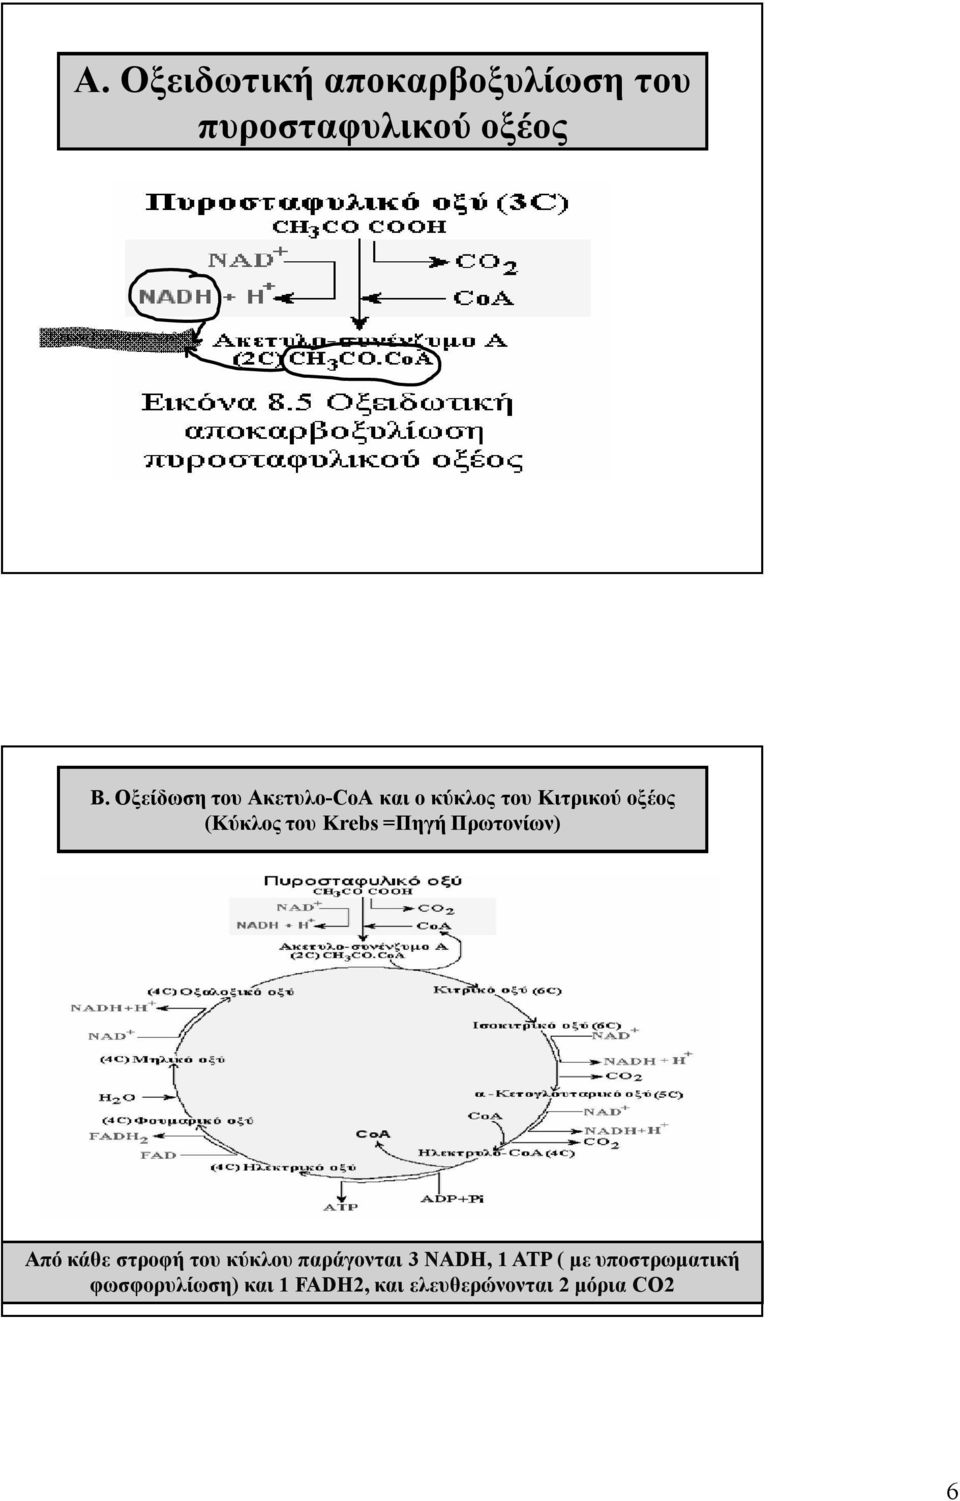 Οξείδωση του Ακετυλο-CοΑ και ο κύκλος του Κιτρικού οξέος (Κύκλος του Krebs